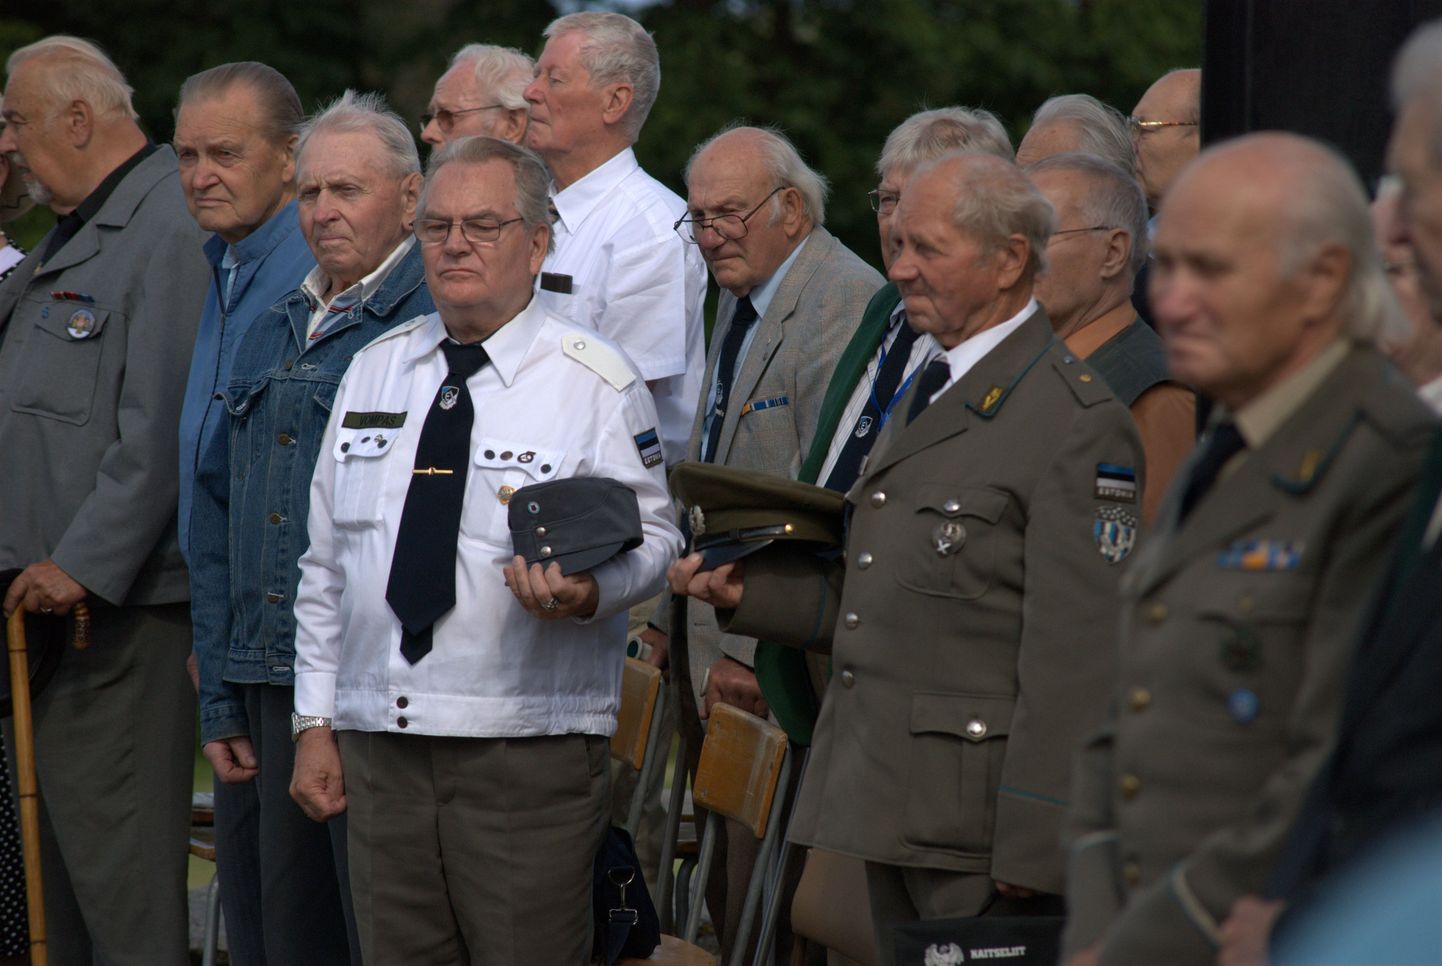 26 июля в Синимяэ собрались ветераны Ваффен СС, а также члены "Клуба друзей Эстонского легиона". На мероприятие, которое завершилось в 15 часов, также пришли некоторые политики.